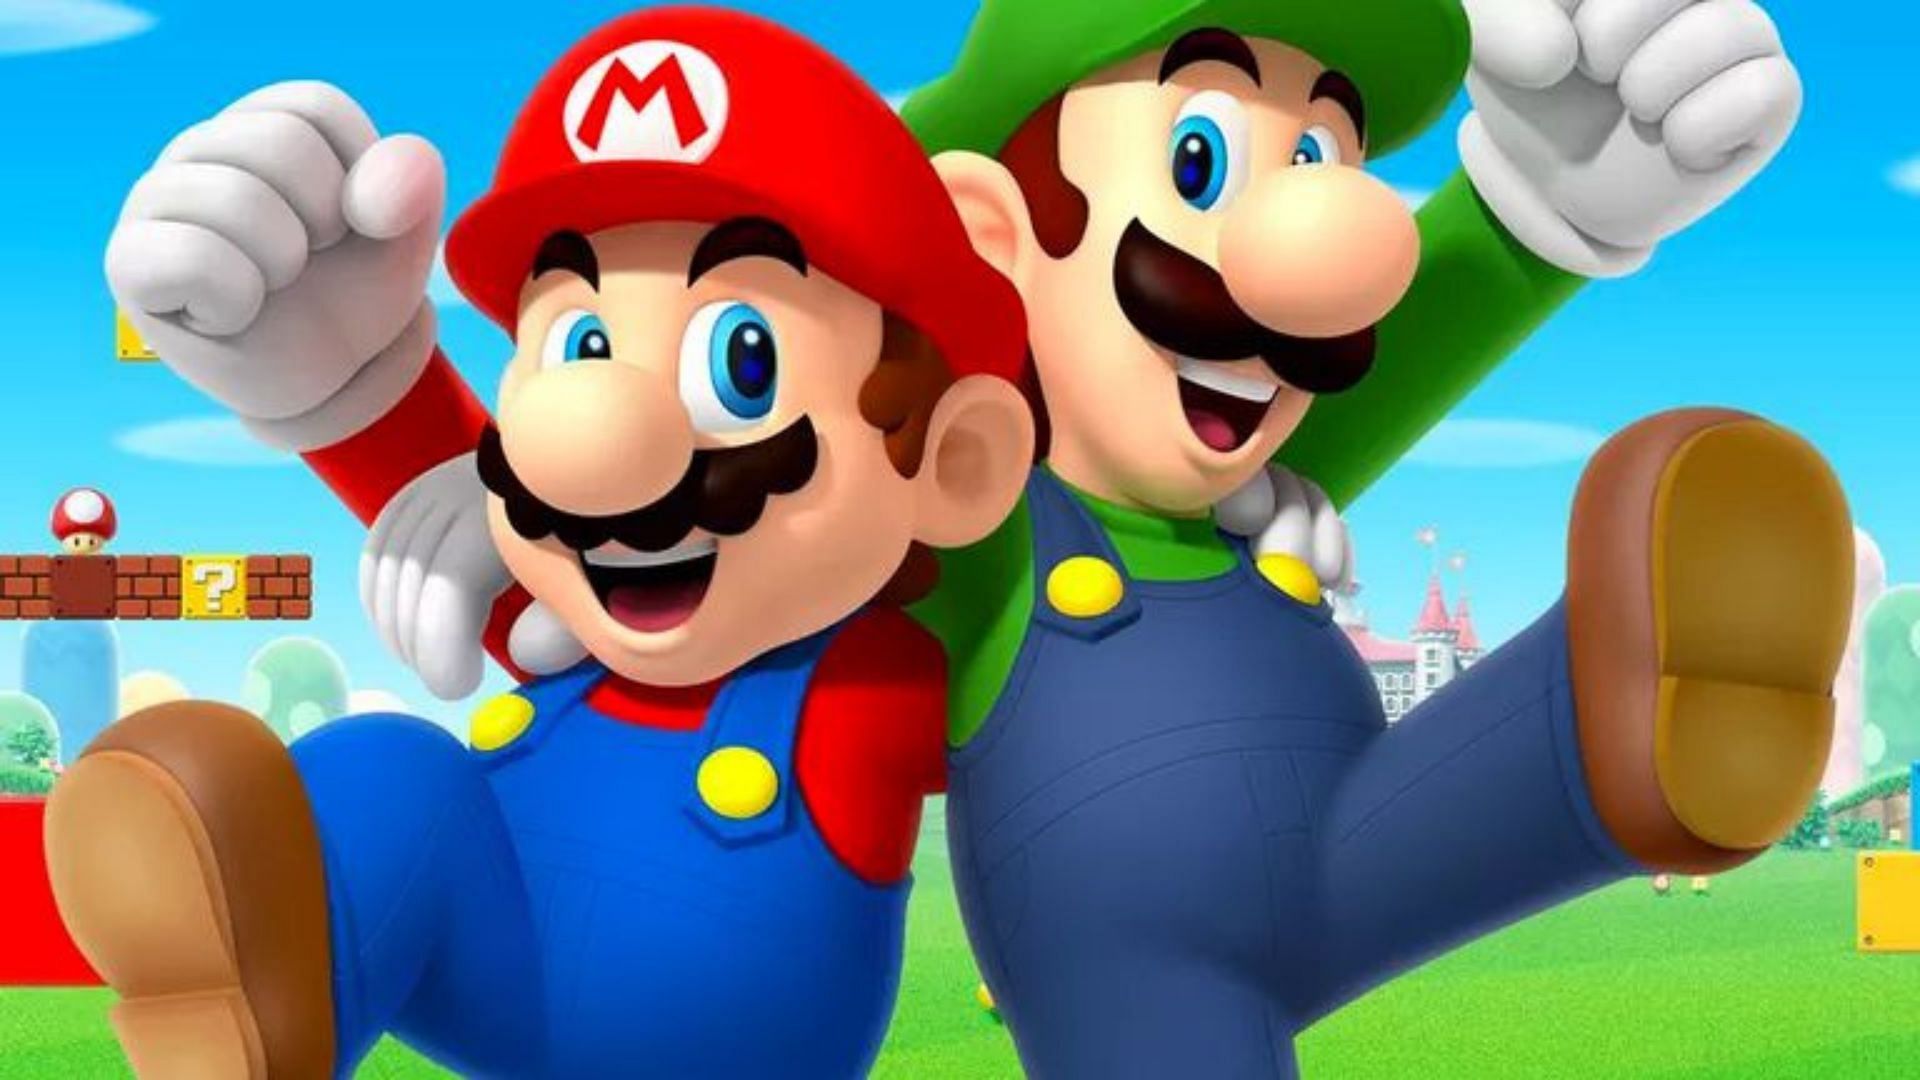 Mario and Luigi (Image via Lifewire)